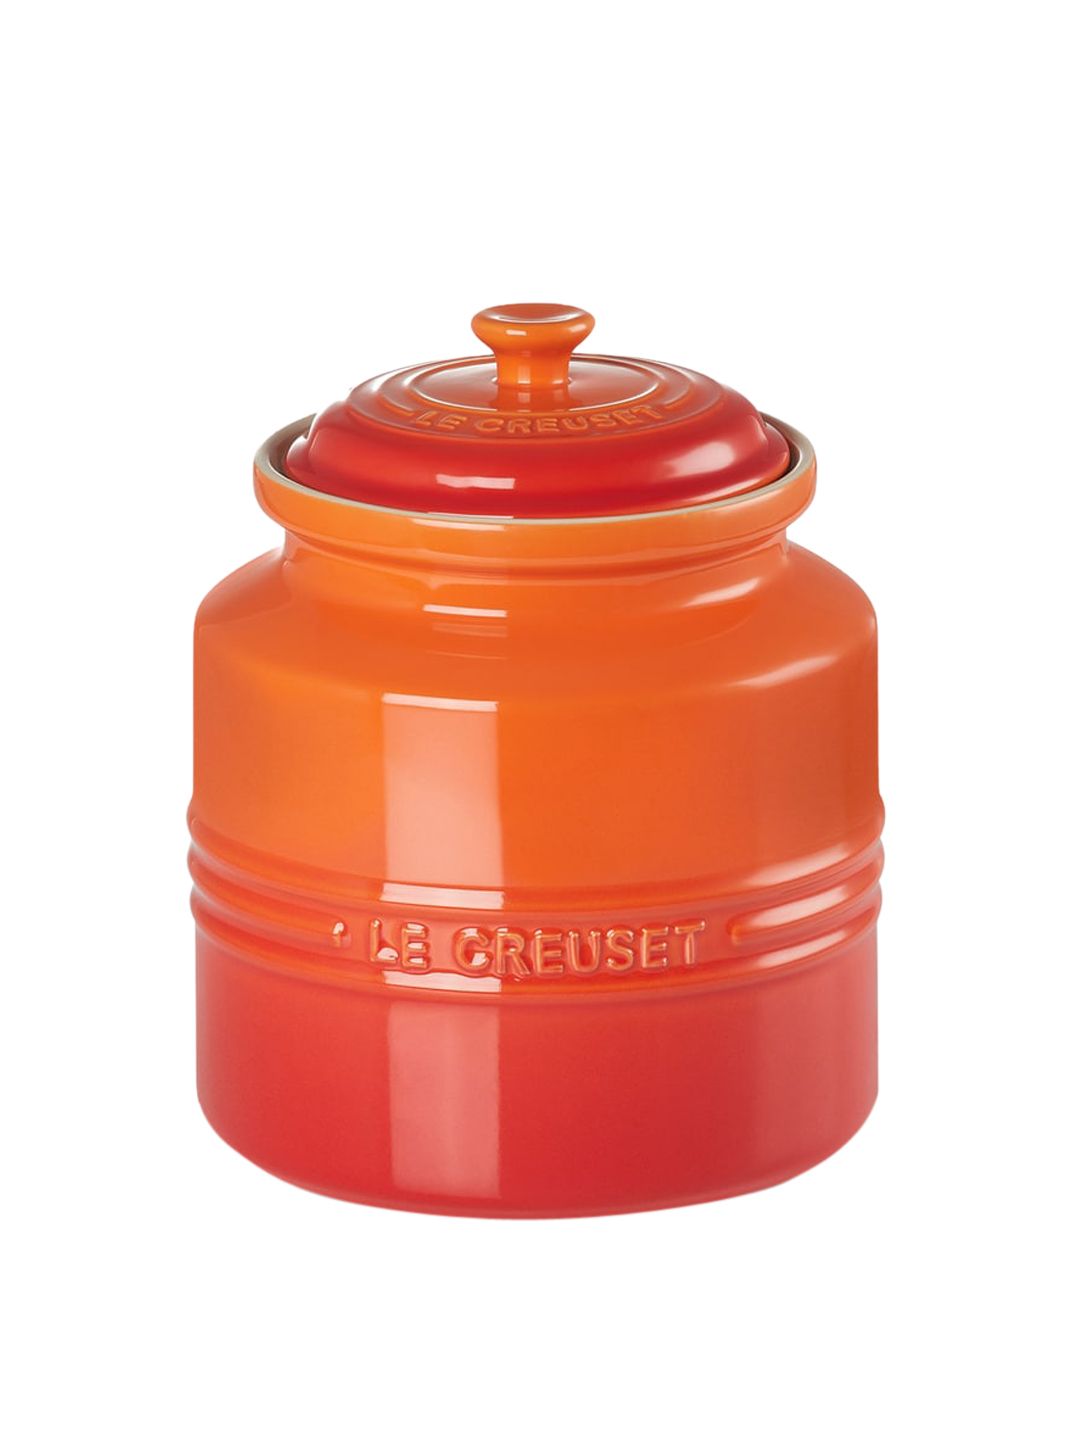 LE CREUSET Orange Stoneware Cookie Jar Price in India